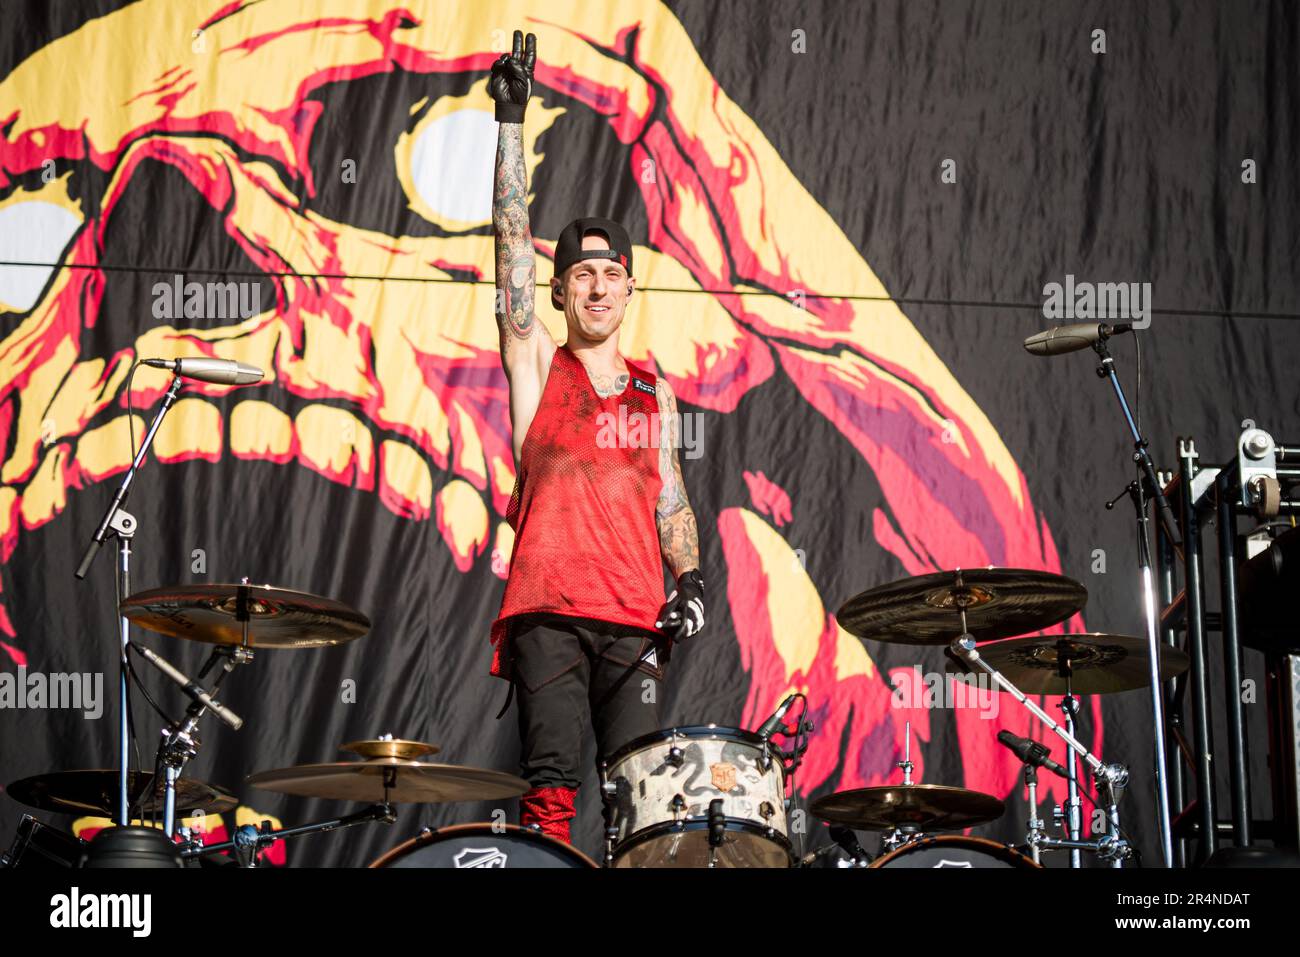 FIRENZE, ITALIA, FIRENZE ROCKS FESTIVAL: Frank Zummo, batterista della band punk rock canadese Sum41, che si esibisce dal vivo sul palco al Firenze Rocks Festival Foto Stock